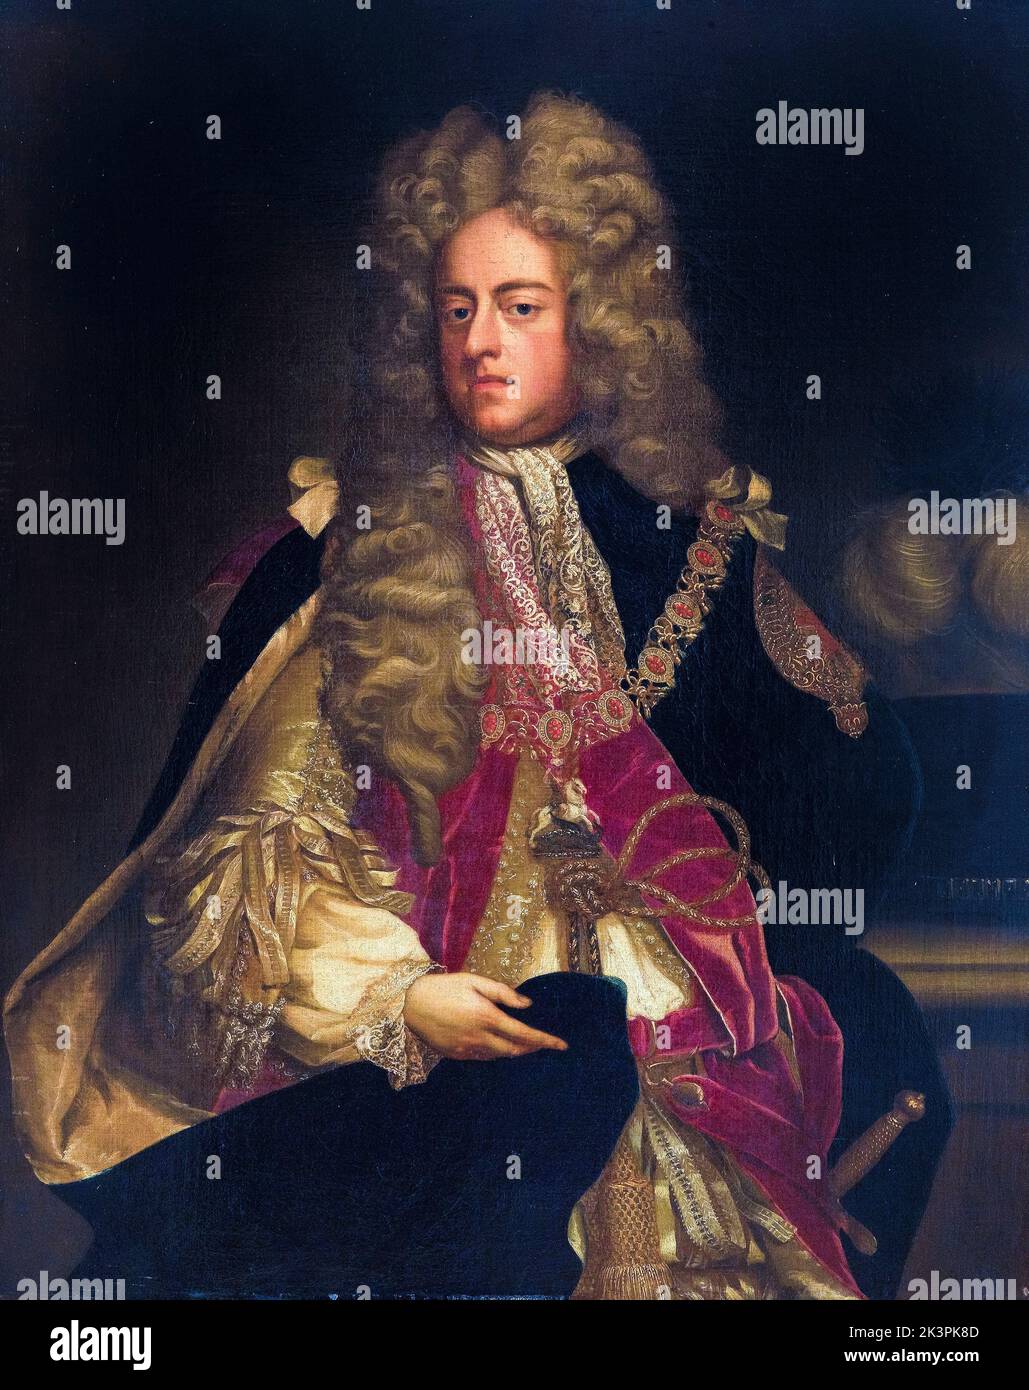 Roi George I de Grande-Bretagne et d'Irlande (1660-1727), règne (1714-1727), portrait peint dans l'huile sur toile par l'artiste de l'école anglaise, 1700-1799 Banque D'Images